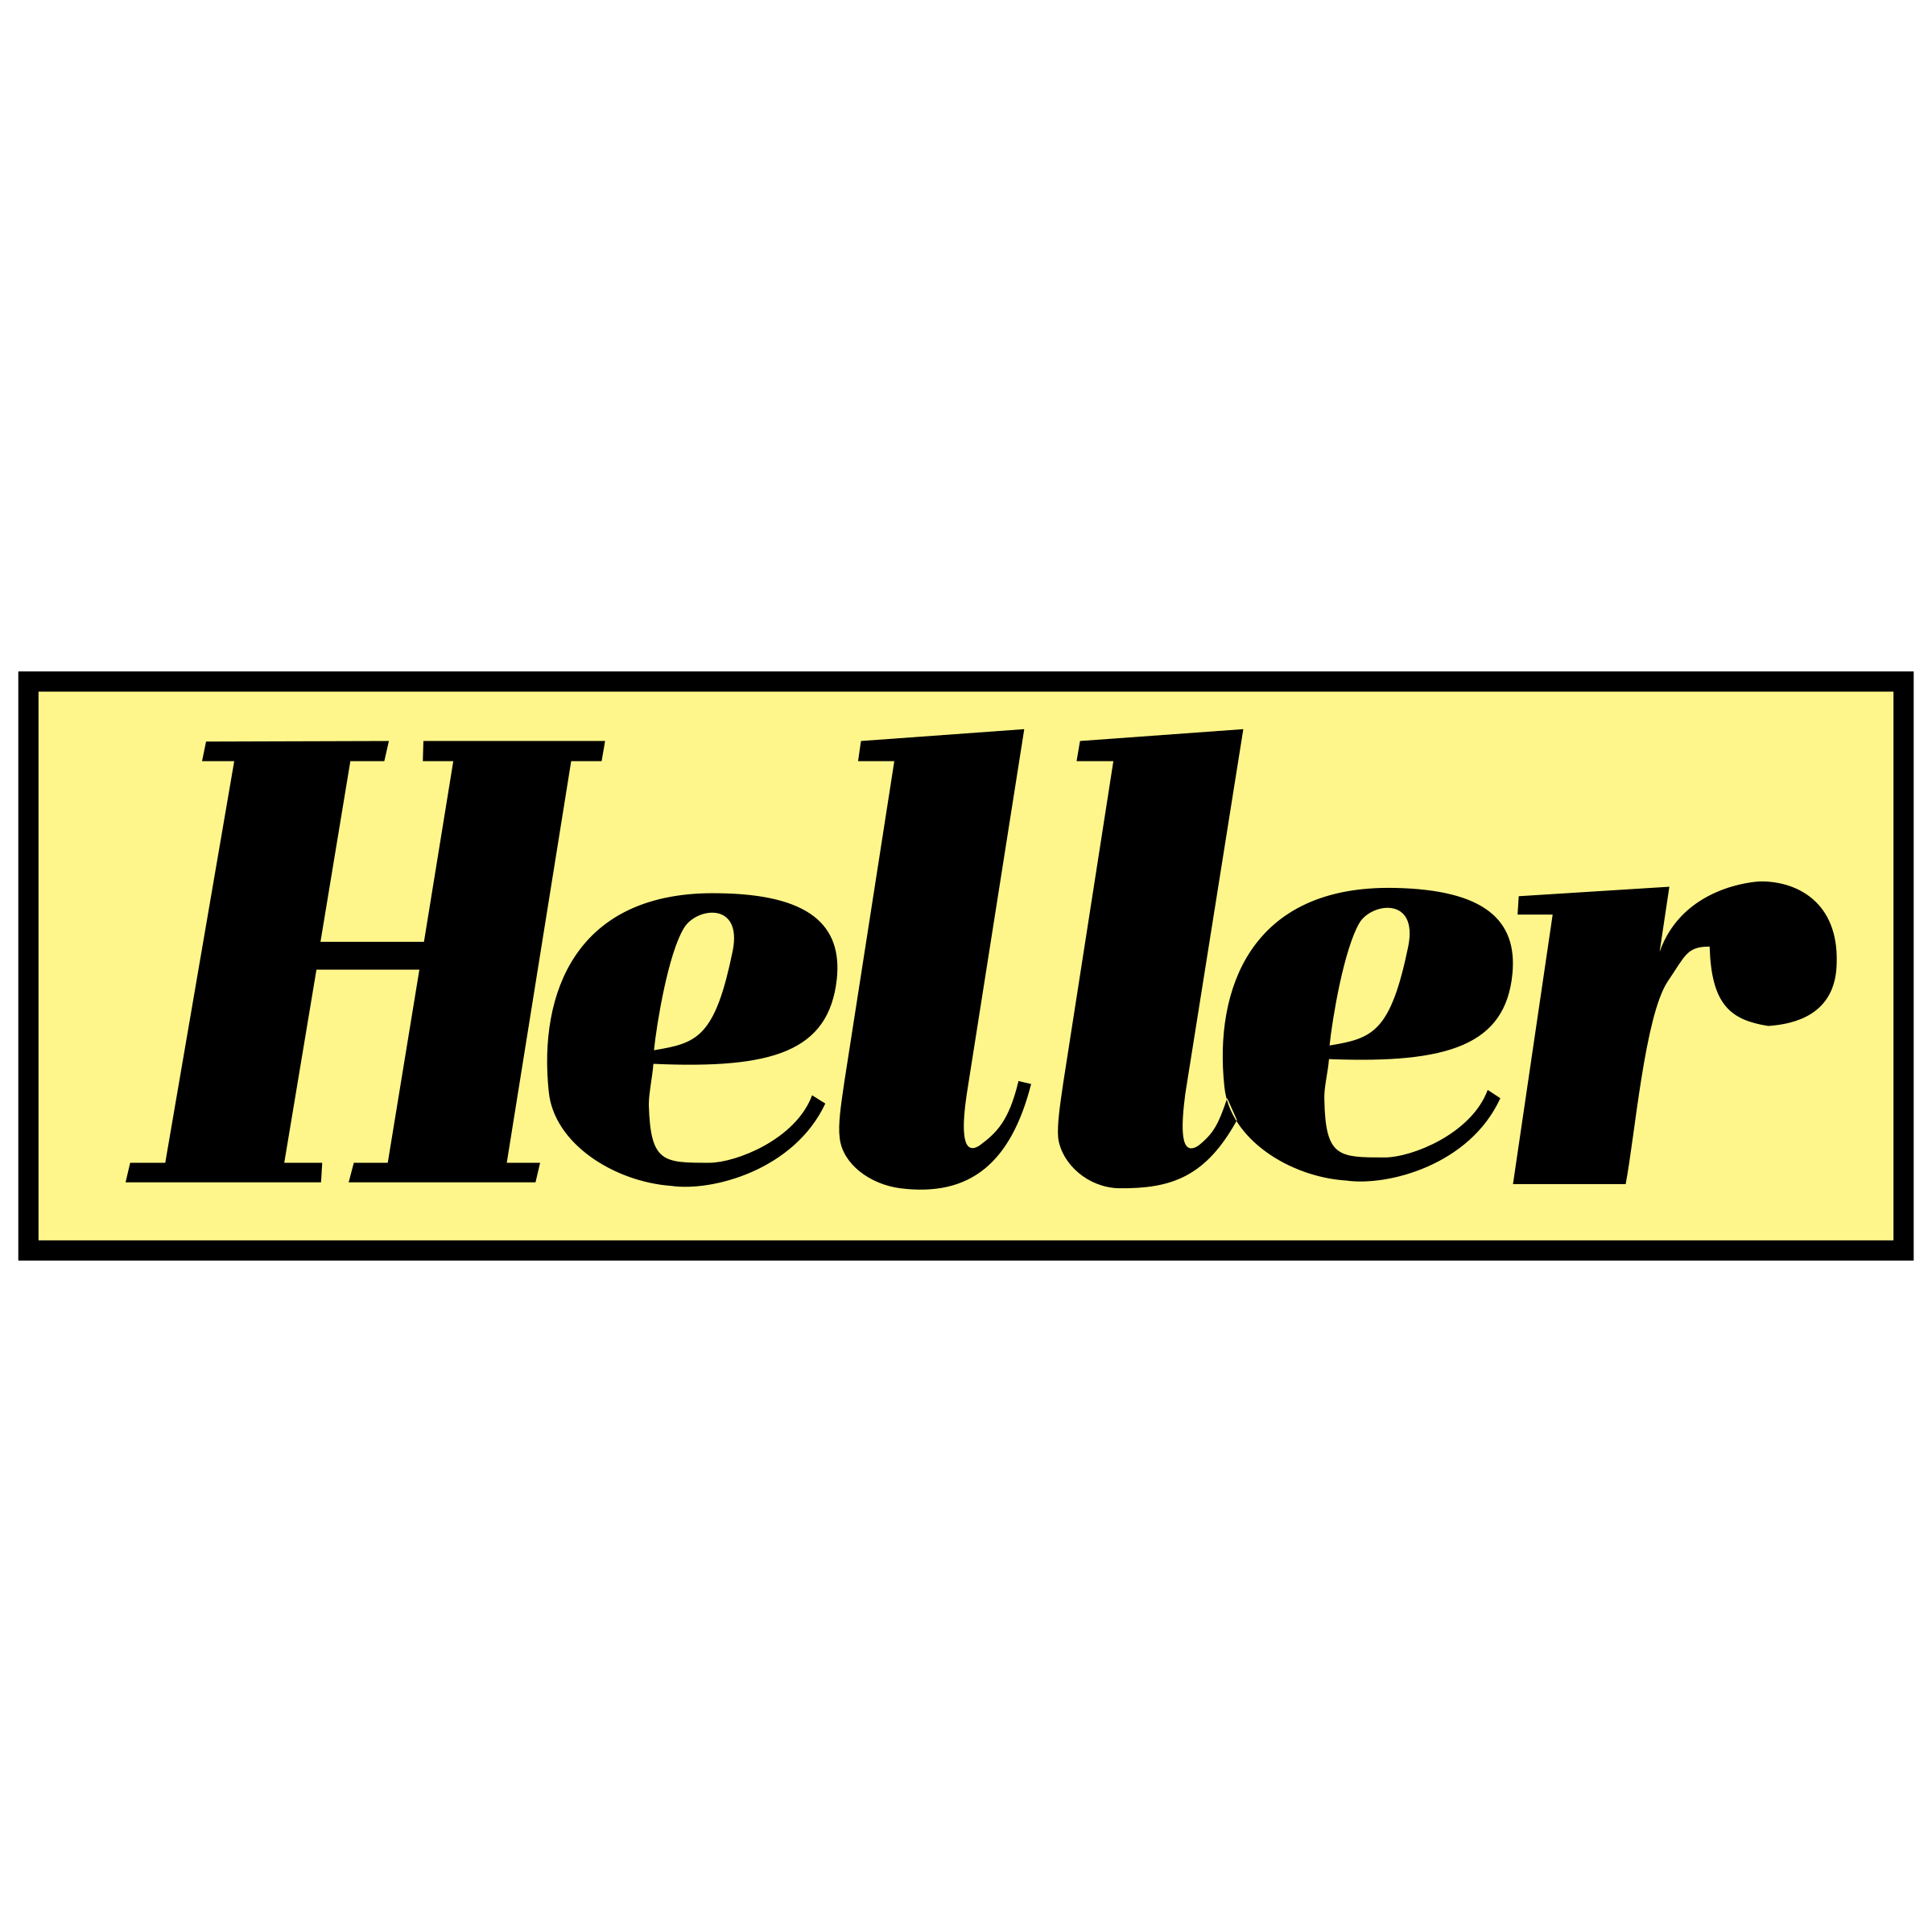 Heller Logo - Heller Logo PNG Transparent & SVG Vector - Freebie Supply